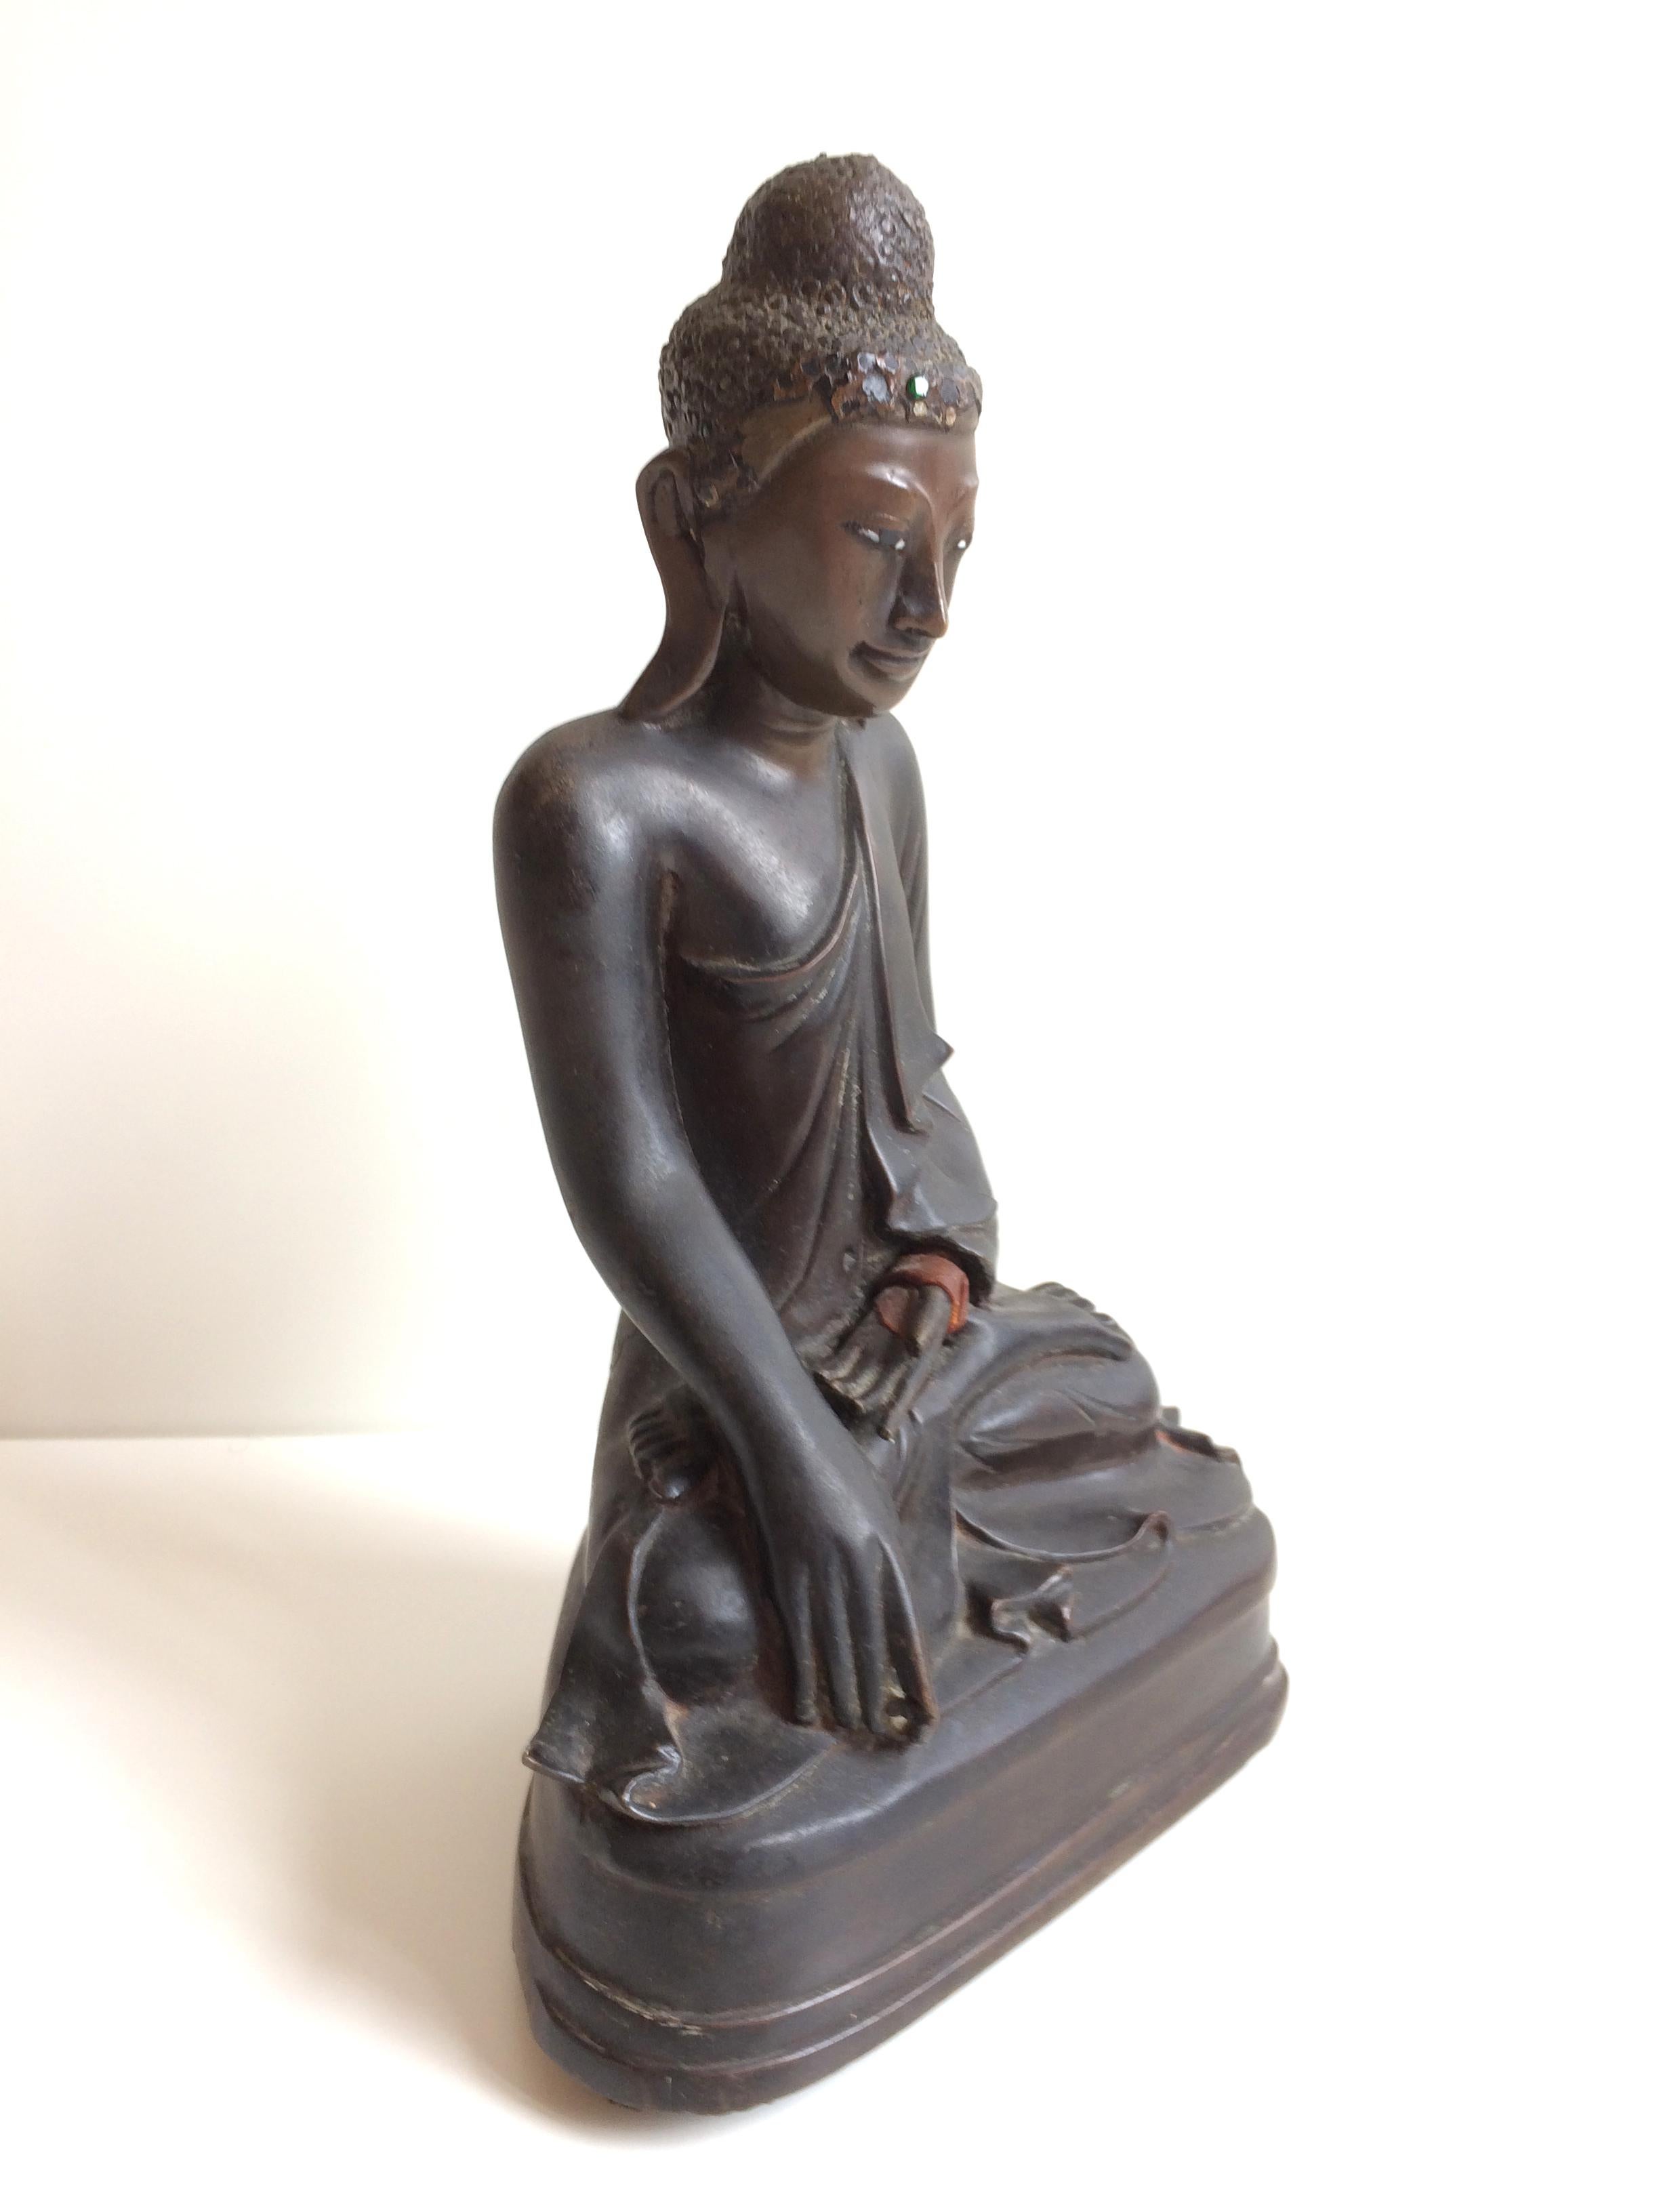 Antiker sitzender Buddha aus Bronze, 19. Jahrhundert, Mandalay-Periode, Birma, um 1880.
Im Sitzen mit der rechten Hand gesenkt bhumisparsimudra und die linke Hand in den Schoß legen.
In sehr gutem, dem Alter entsprechendem Zustand. Die ruhende